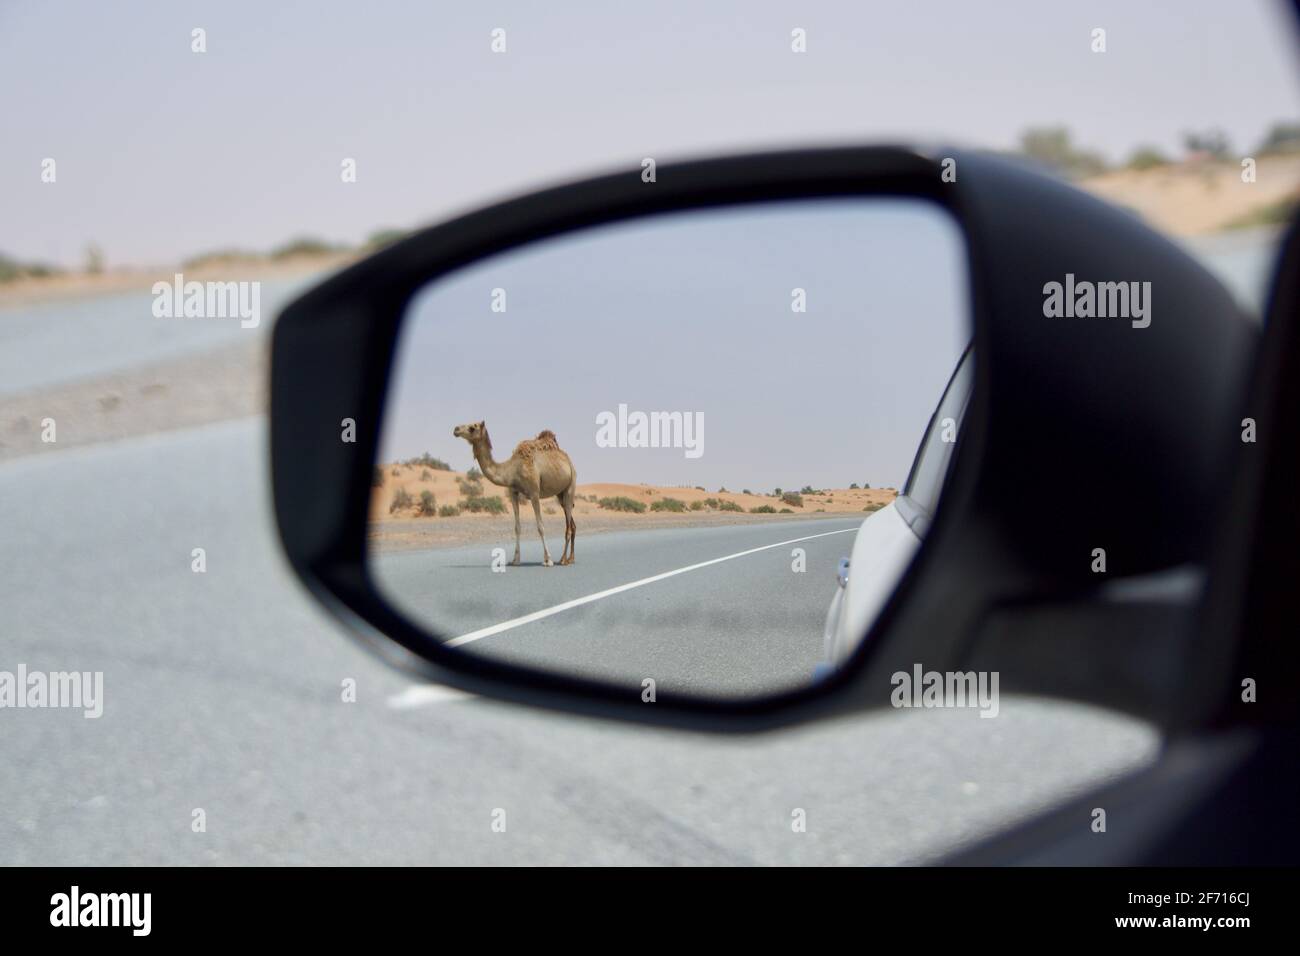 DUBAI, VEREINIGTE ARABISCHE EMIRATE - 16. JUN 2019: Wildes Dromedar oder erwachsenes arabisches Kamel, das mitten in der Wüste die Straße überquert, mit Sanddünen in der Stockfoto